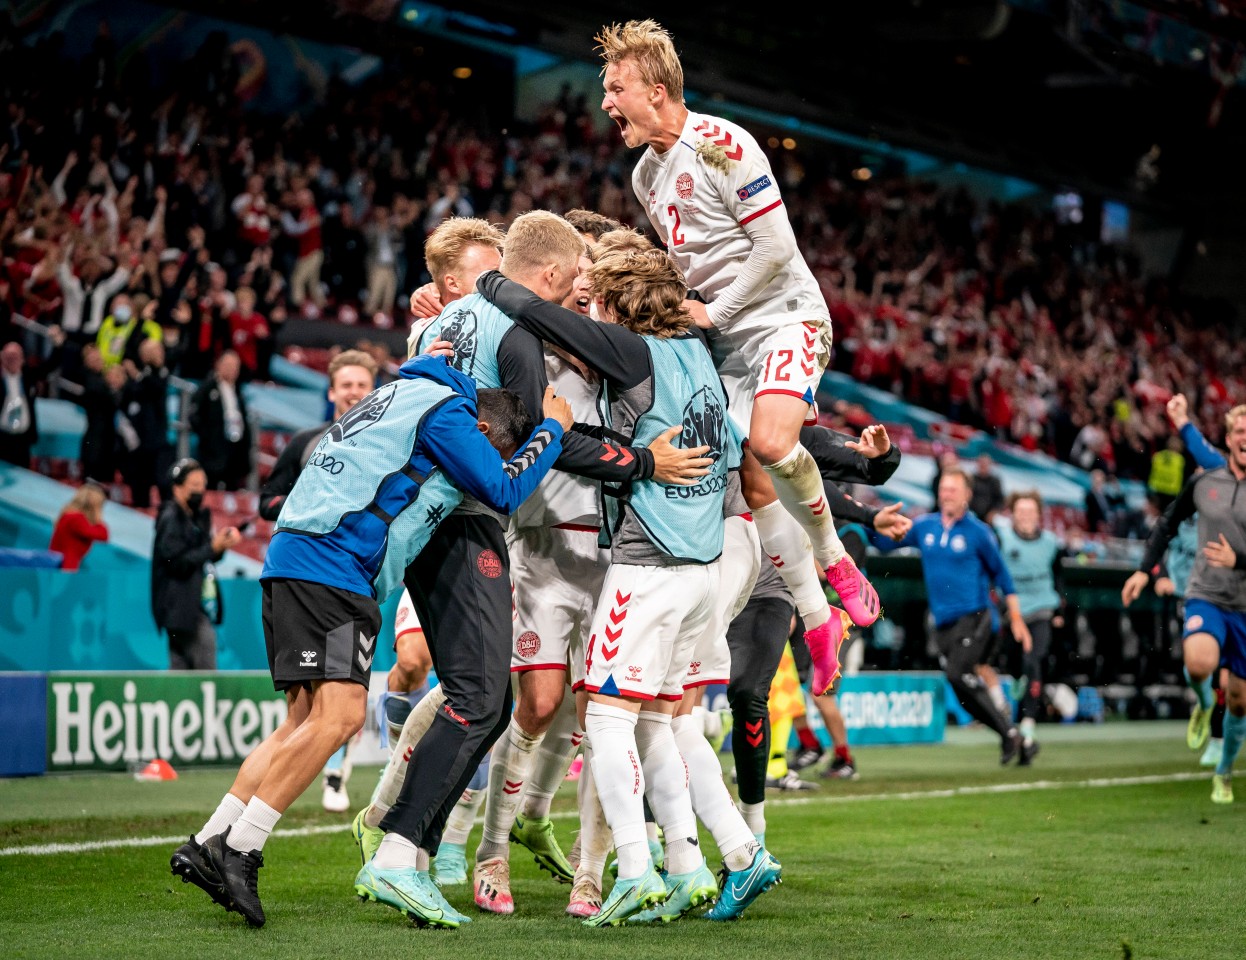 Dänemark gelingt die erste Sensation bei der EM 2021.